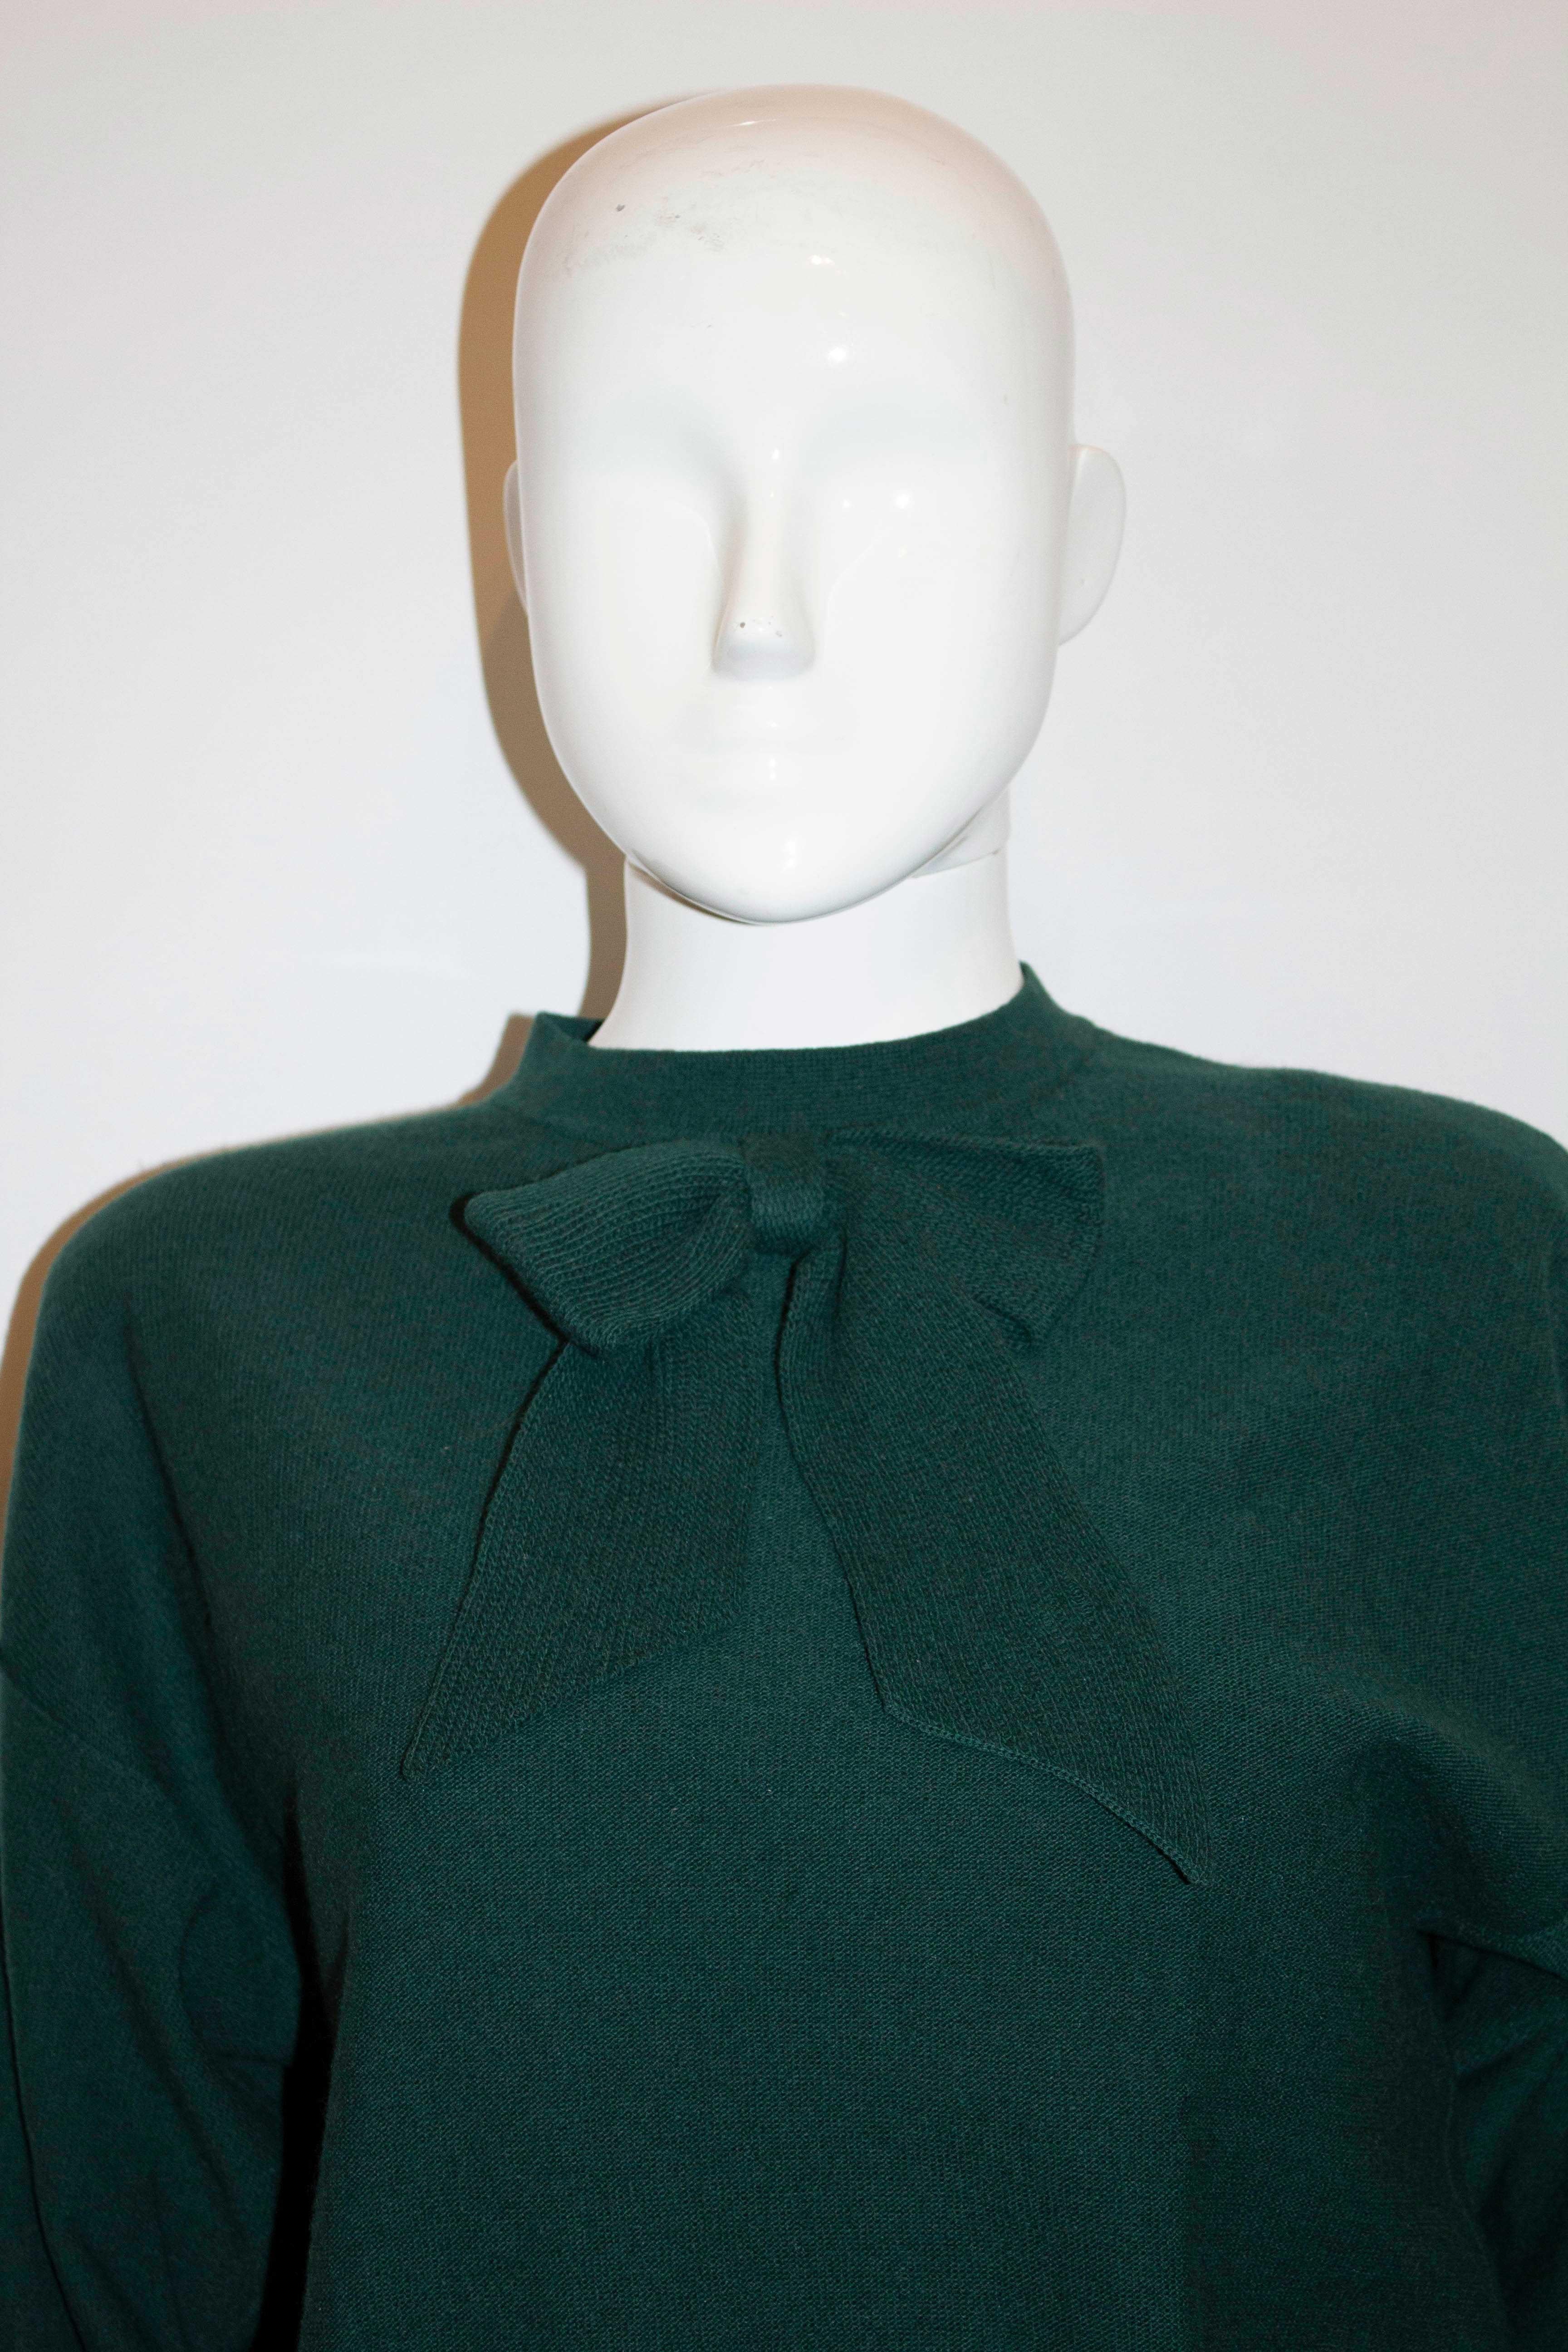 Ein toller grüner Pullover aus Wolle von Sonia Rykiel Mainline. Der Pullover ist in einem wunderschönen Weihnachtsbaumgrün gehalten und hat eine Druckknopföffnung auf der Rückseite sowie eine dekorative Strickschleife auf der Vorderseite. Es hat